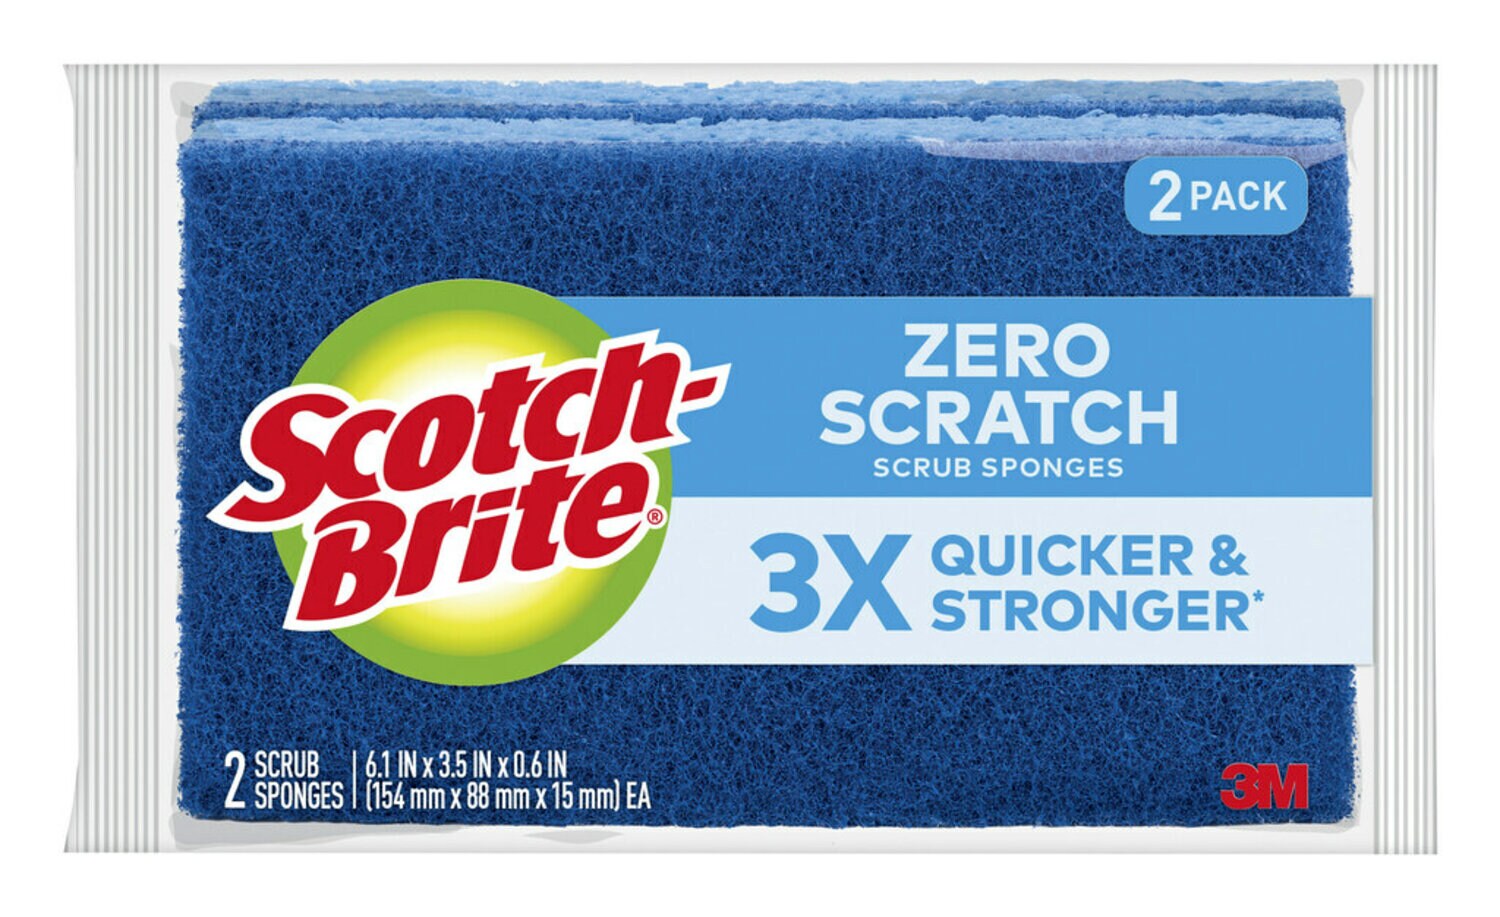 7100096719 - Scotch-Brite Large Zero Scratch Scrub Sponge 555-12, 12/2